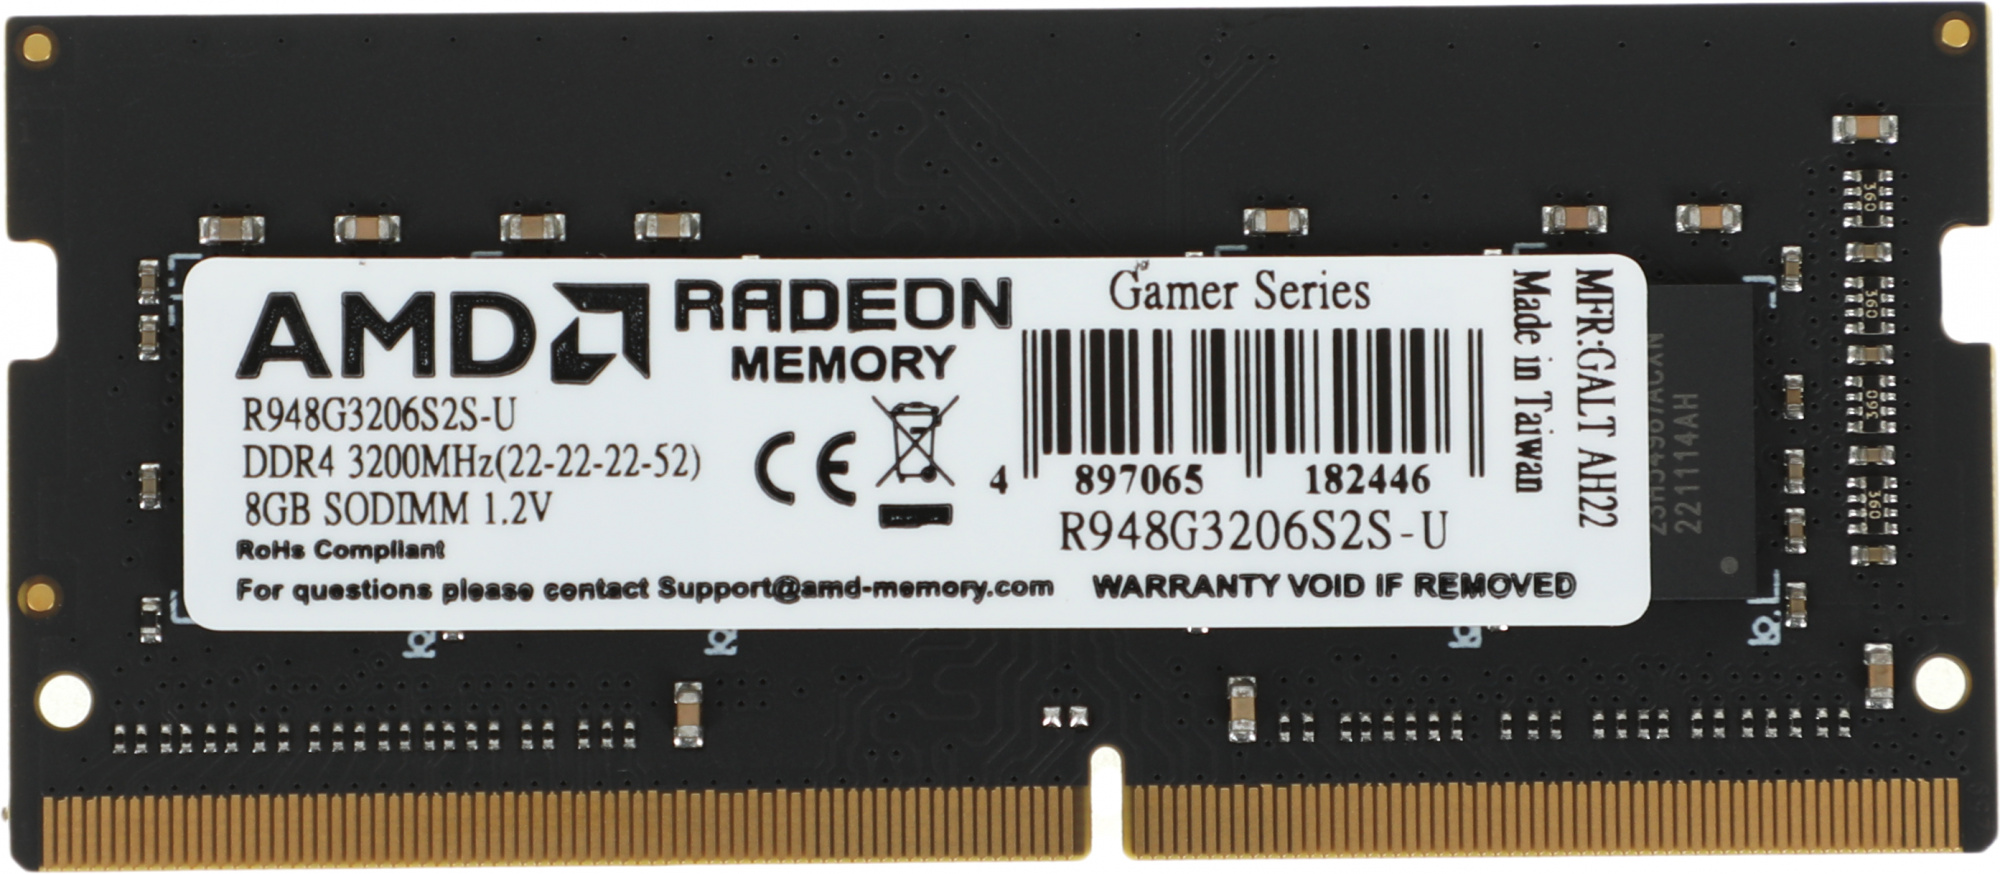   AMD Radeon R9 Gamer Series R948G3206S2S-U DDR4 -  1x 8 3200,   (SO-DIMM),  Ret